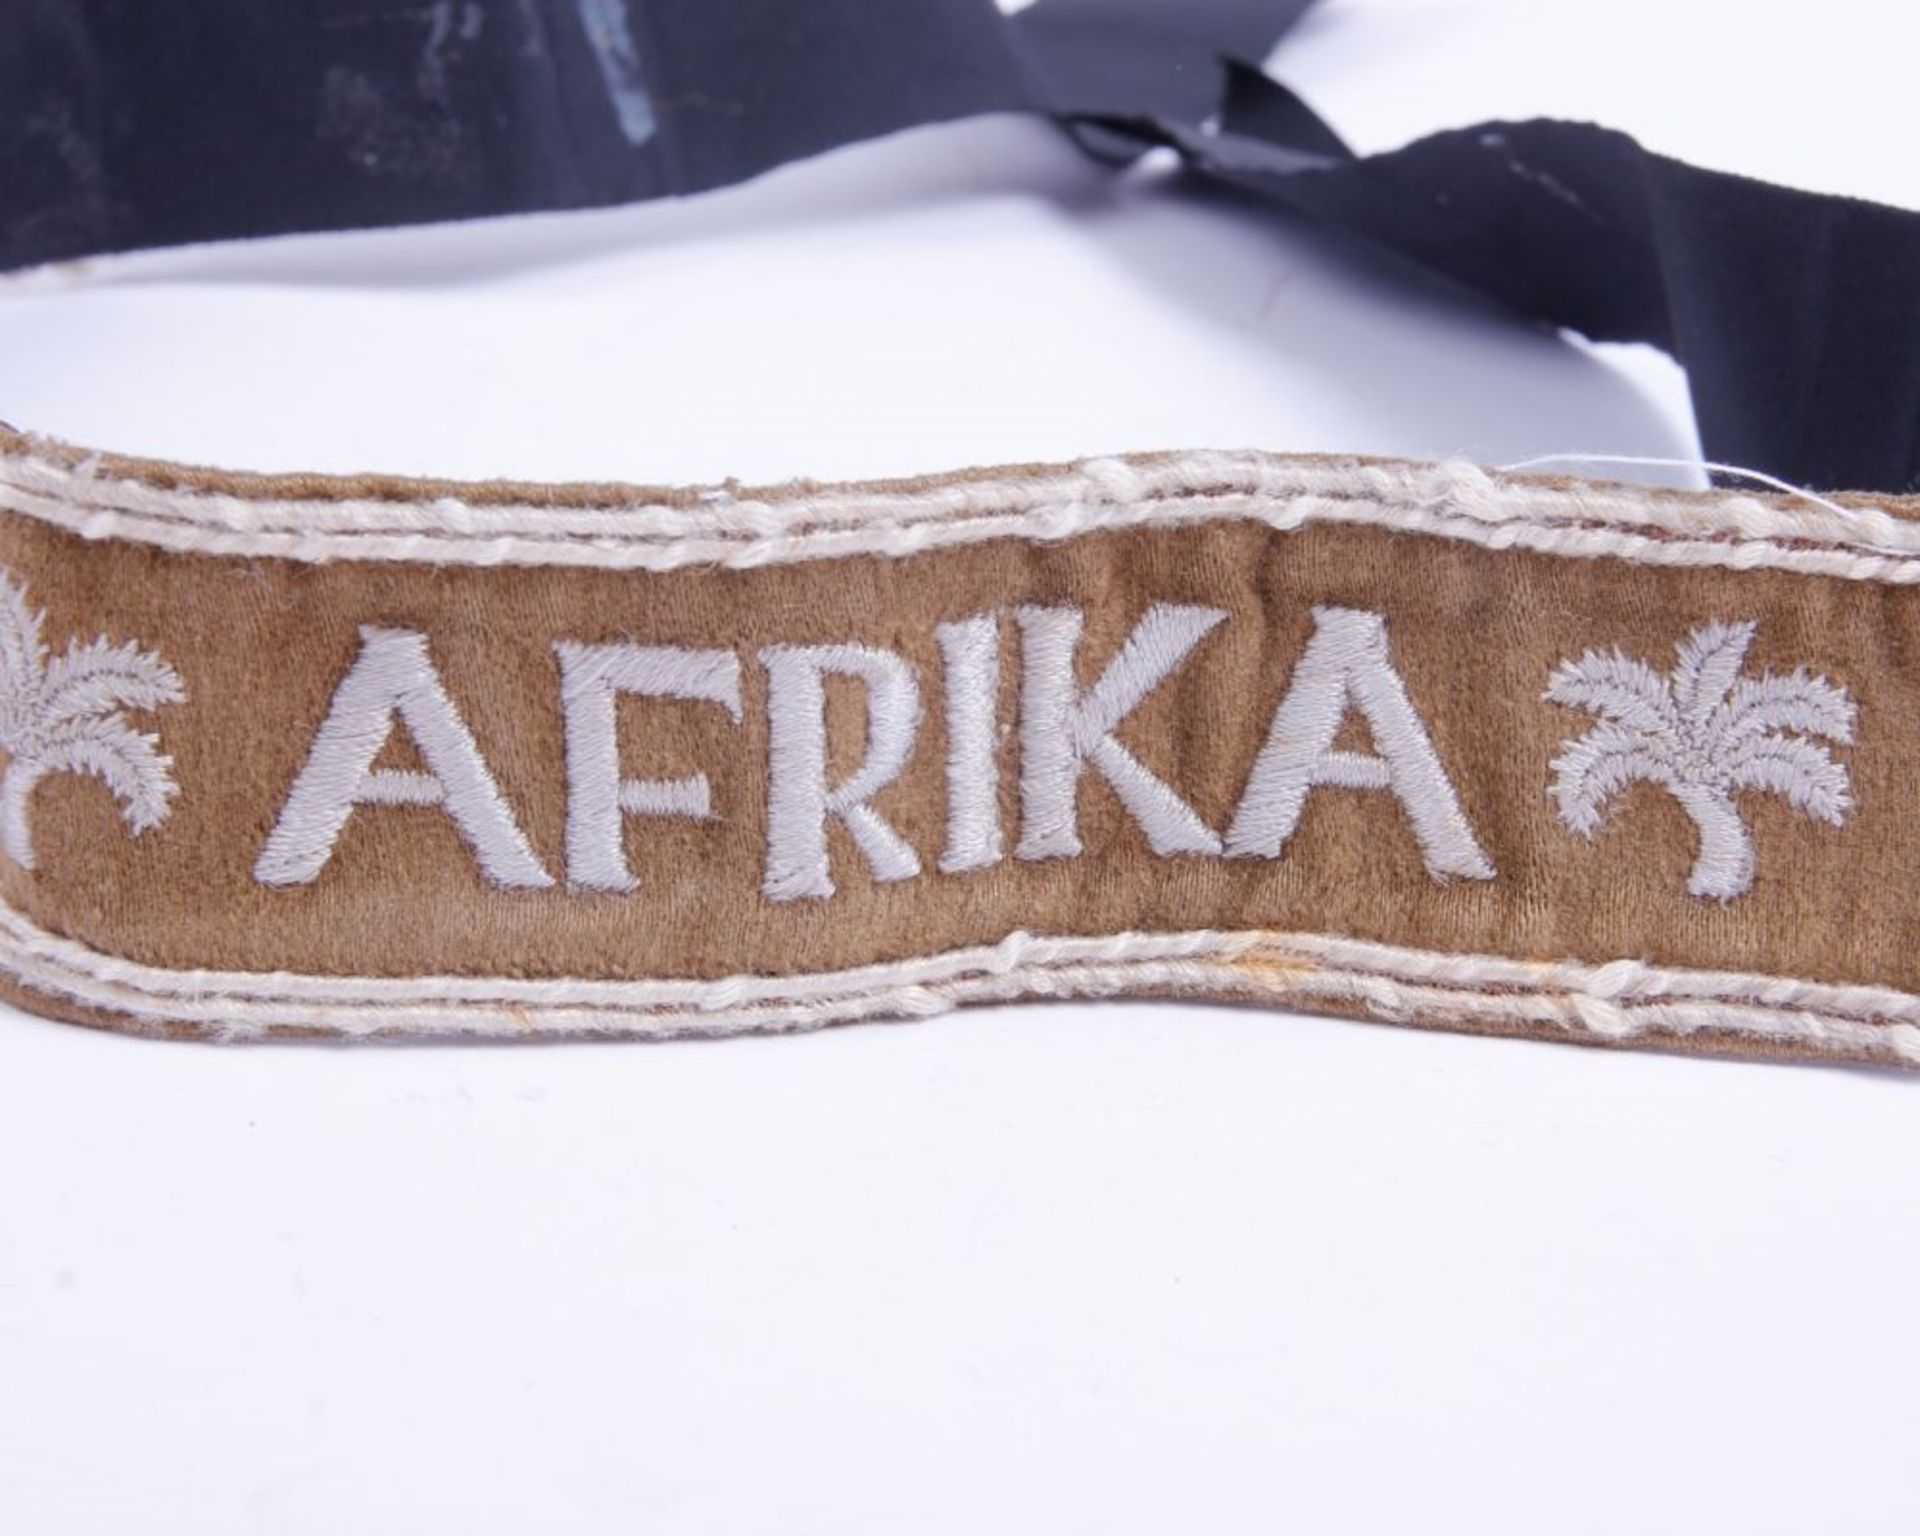 Ärmelband Afrika, Ärmelband Afrika auf Kamelhaar in der Standardausführung, aufgenäht auf ein - Bild 2 aus 3